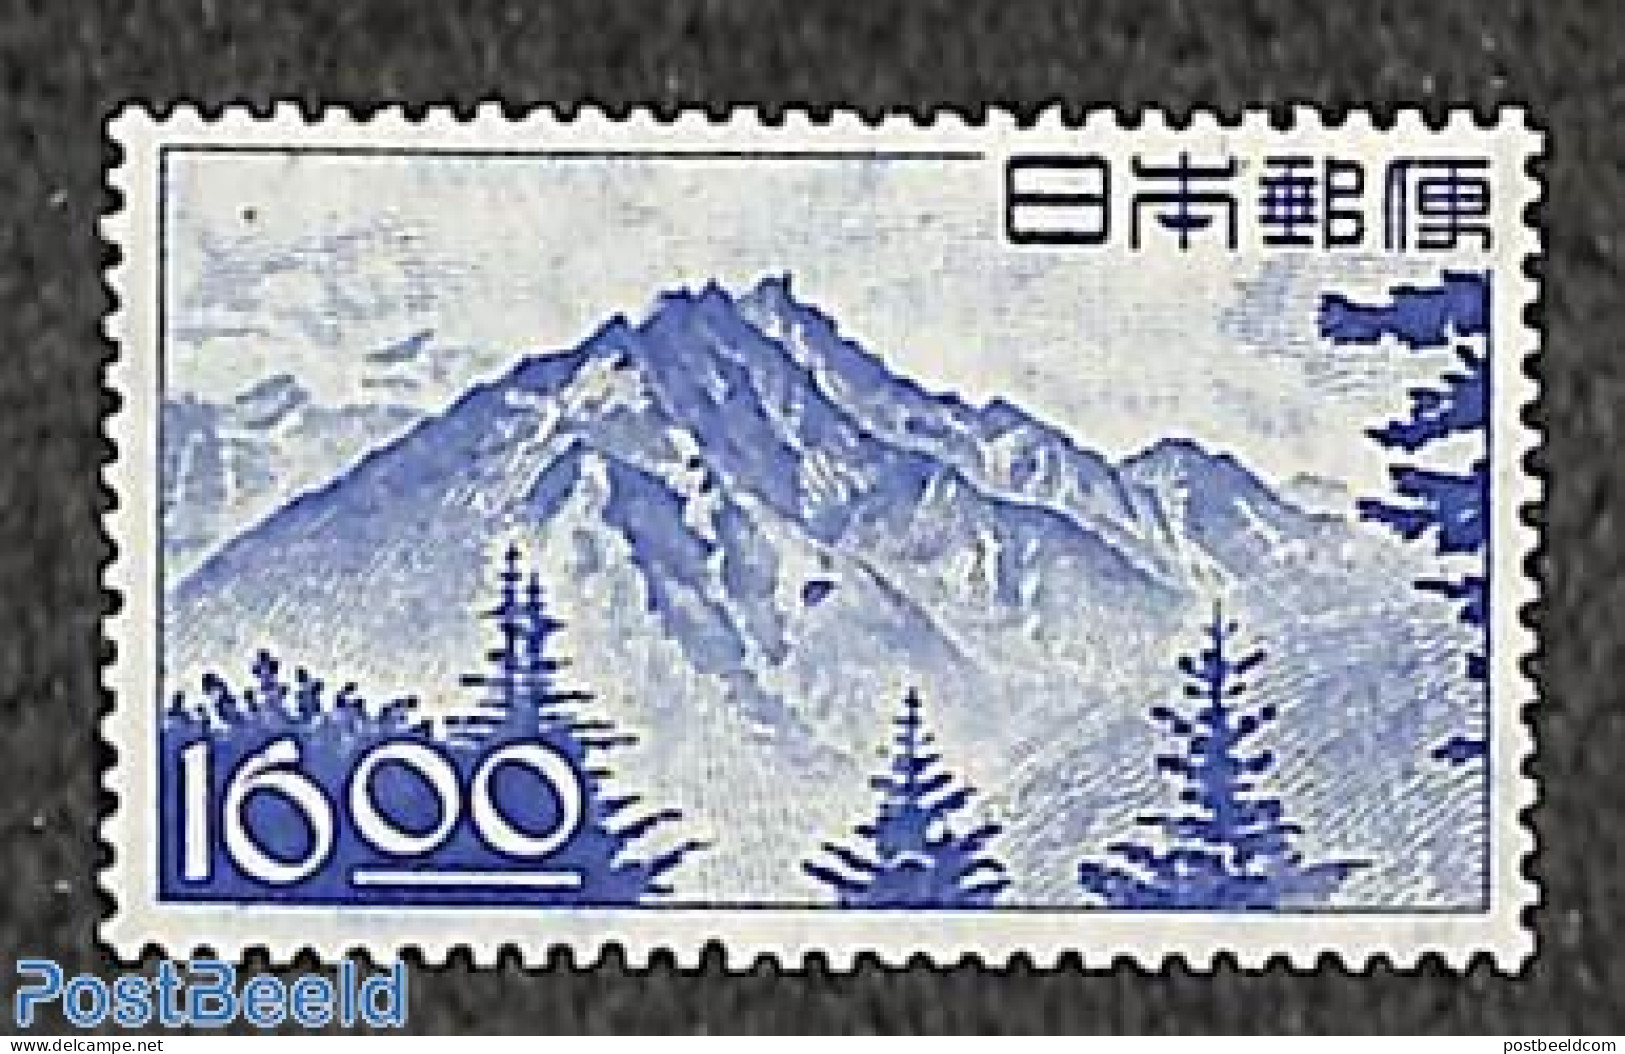 Japan 1949 Definitive 1v, Mint NH, Sport - Mountains & Mountain Climbing - Ungebraucht